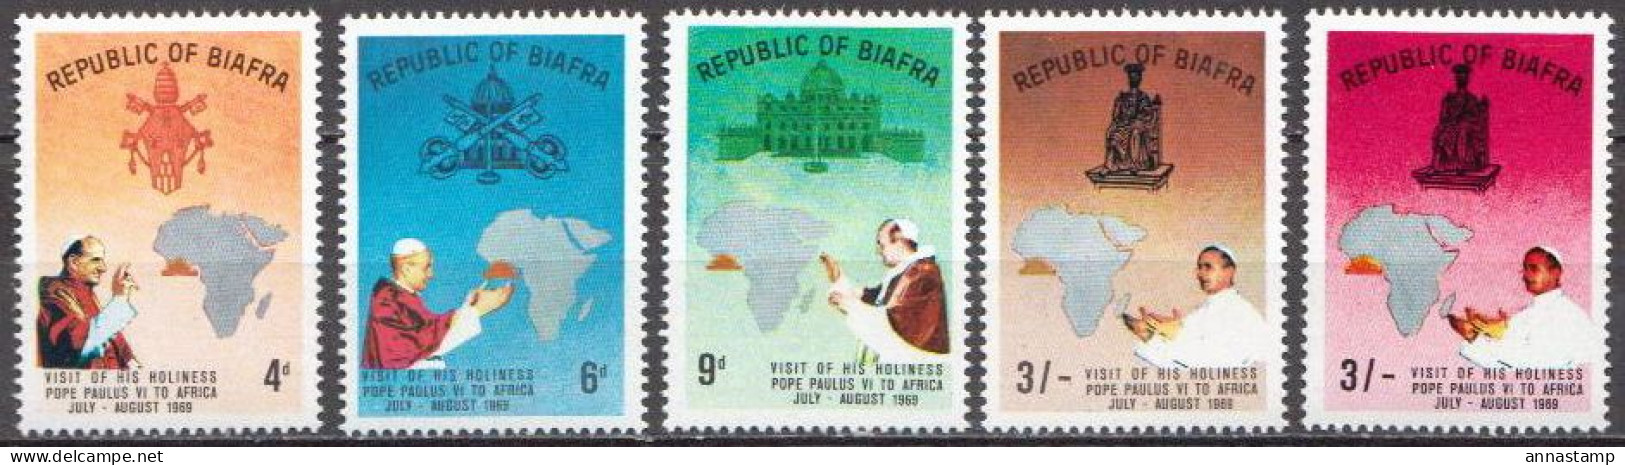 Biafra MNH Set With Error Stamp - Päpste